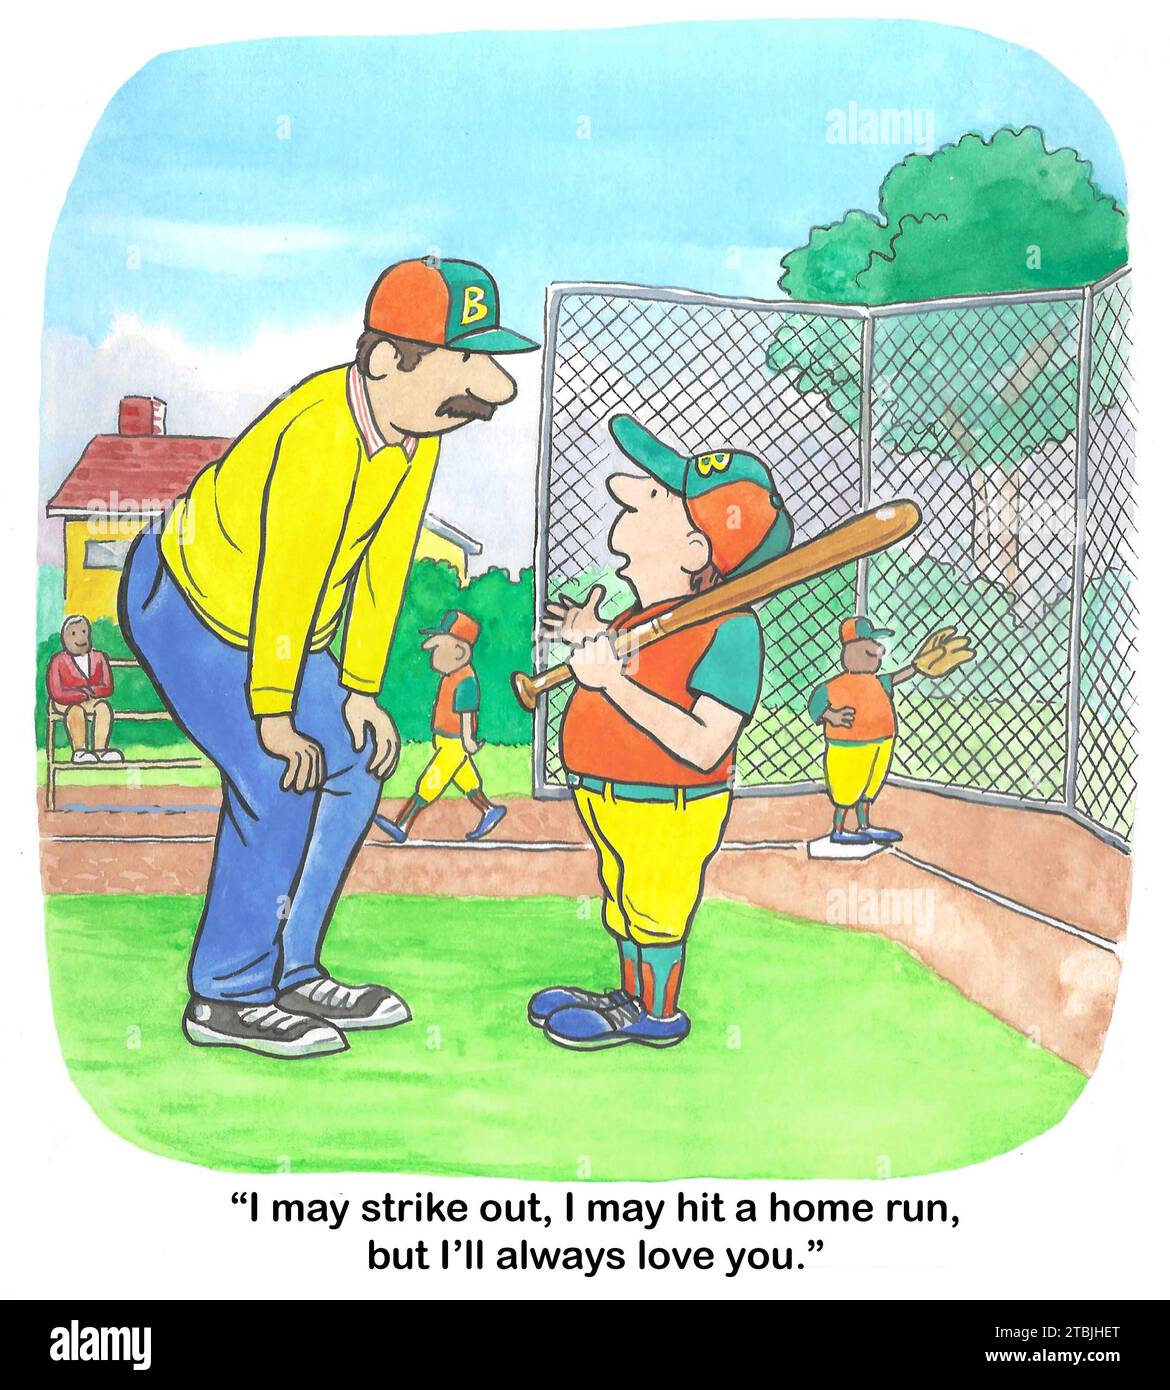 Dessin animé en couleur de rôles familiaux inversés - le fils dit au père «Je t'aimerai toujours», même si je ne fais pas bien en softball. Banque D'Images